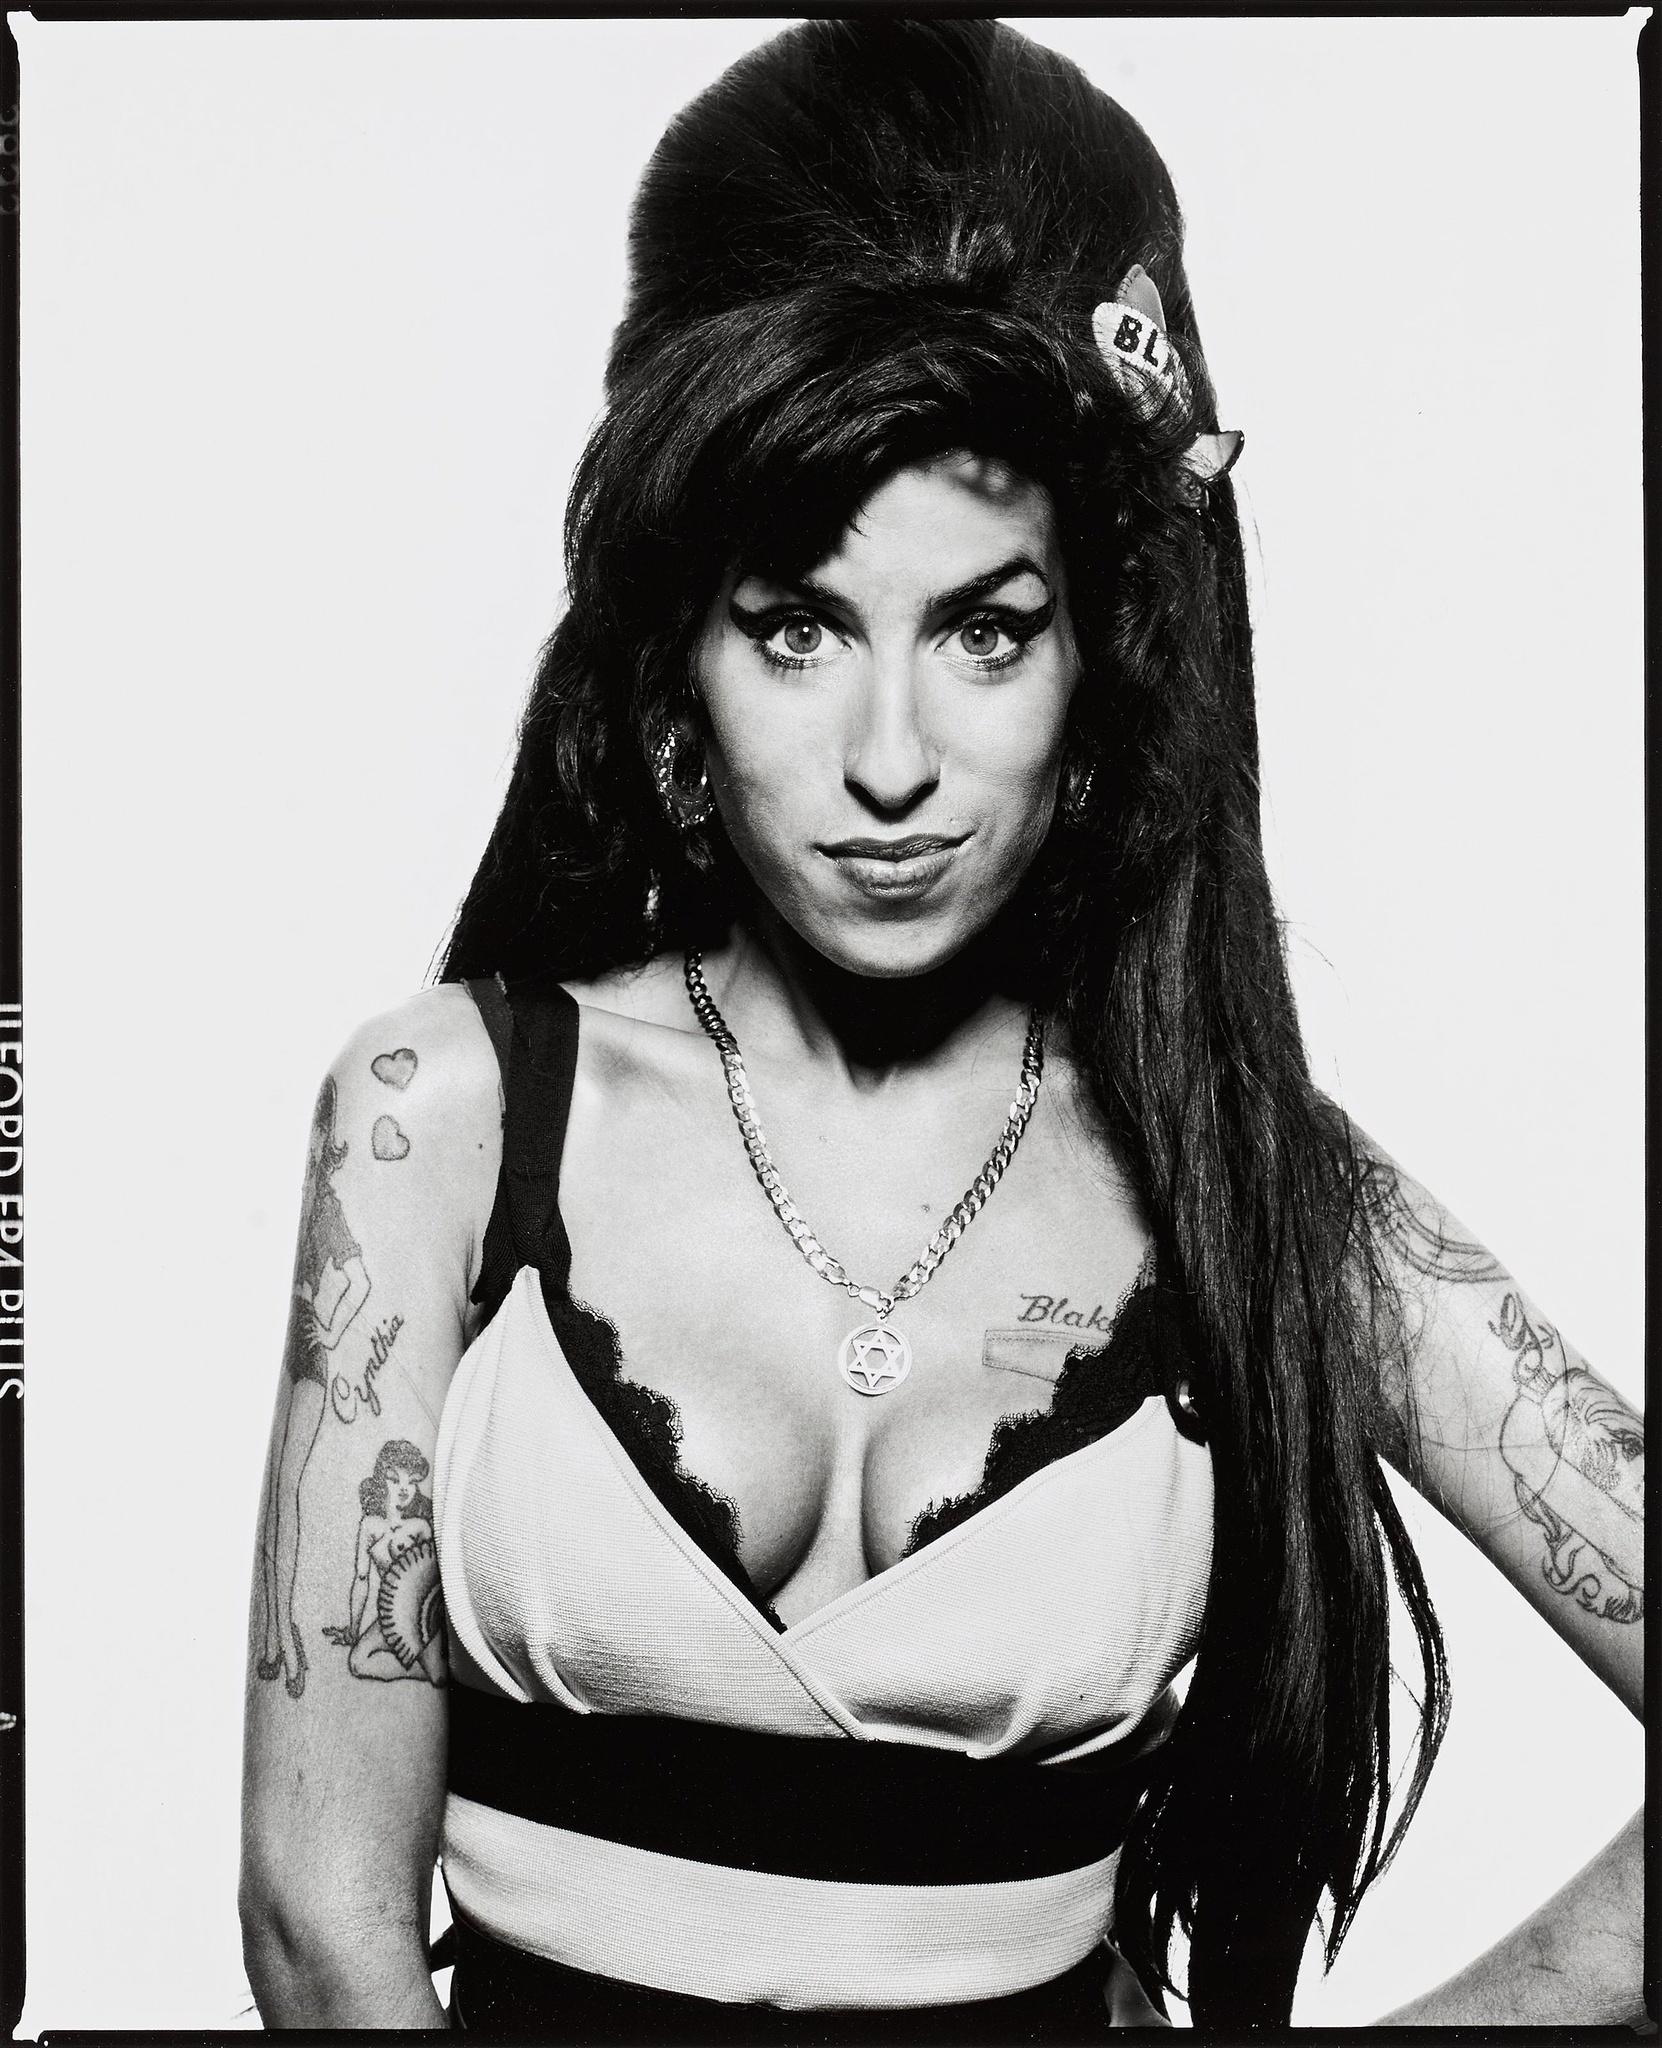 Amy Winehouse, London - Terry O'Neill (Schwarz-Weiß-Fotografie)
Signiert und nummeriert
Silber-Gelatine-Druck
16 x 12 Zoll - £4,200
20 x 16 Zoll - £6,000
30 x 20 Zoll - £9,000

Terry O'Neill (1938-2019) fotografierte 1963 die Beatles und die Rolling